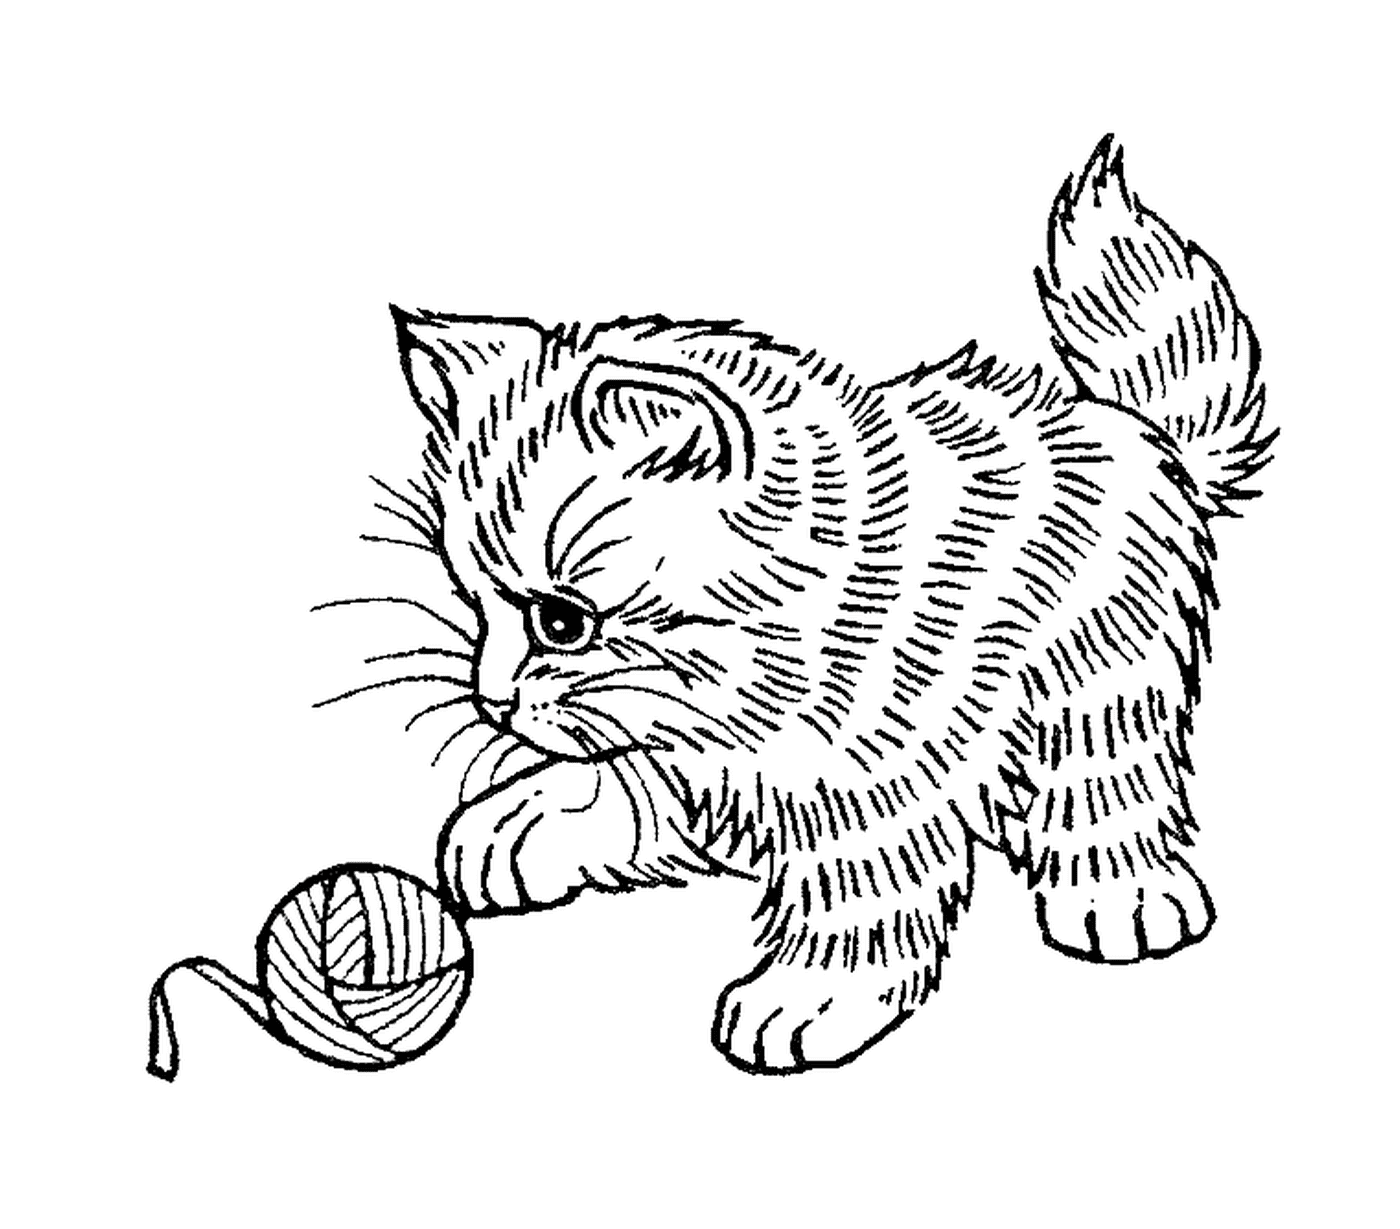  一只可爱的猫 玩羊毛球 